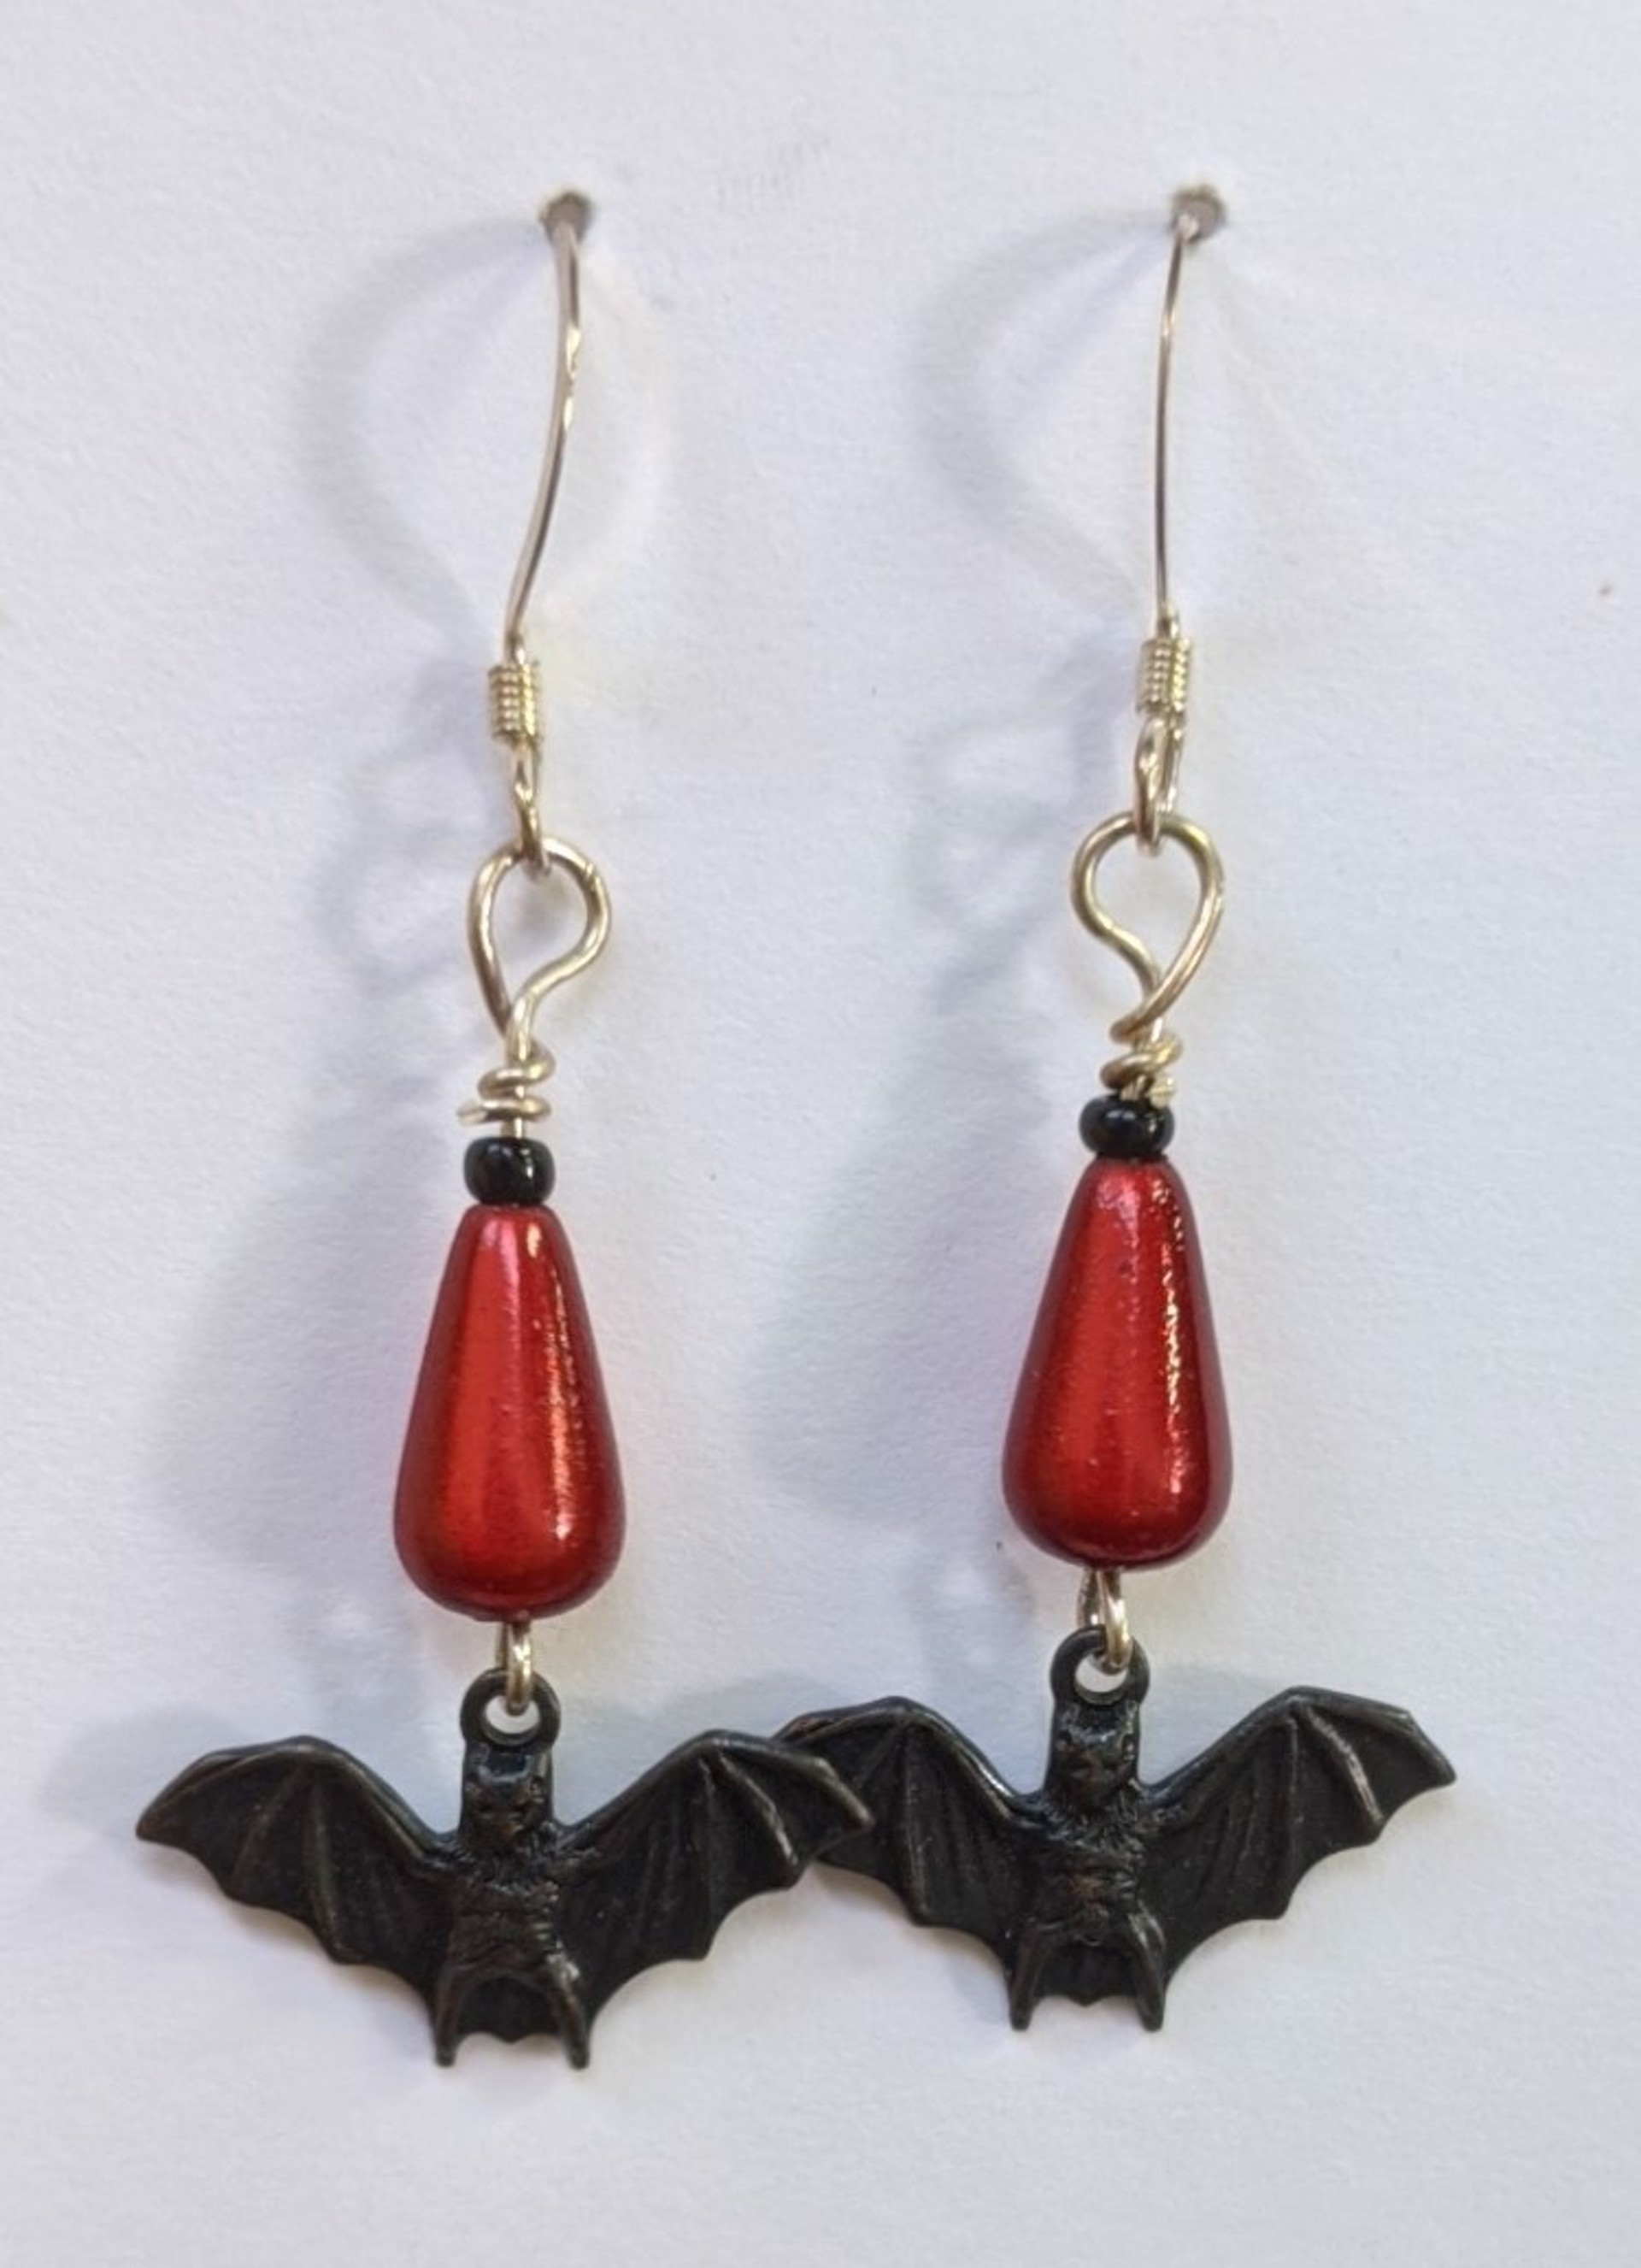 Wee Bats earrings by Tracy Taft